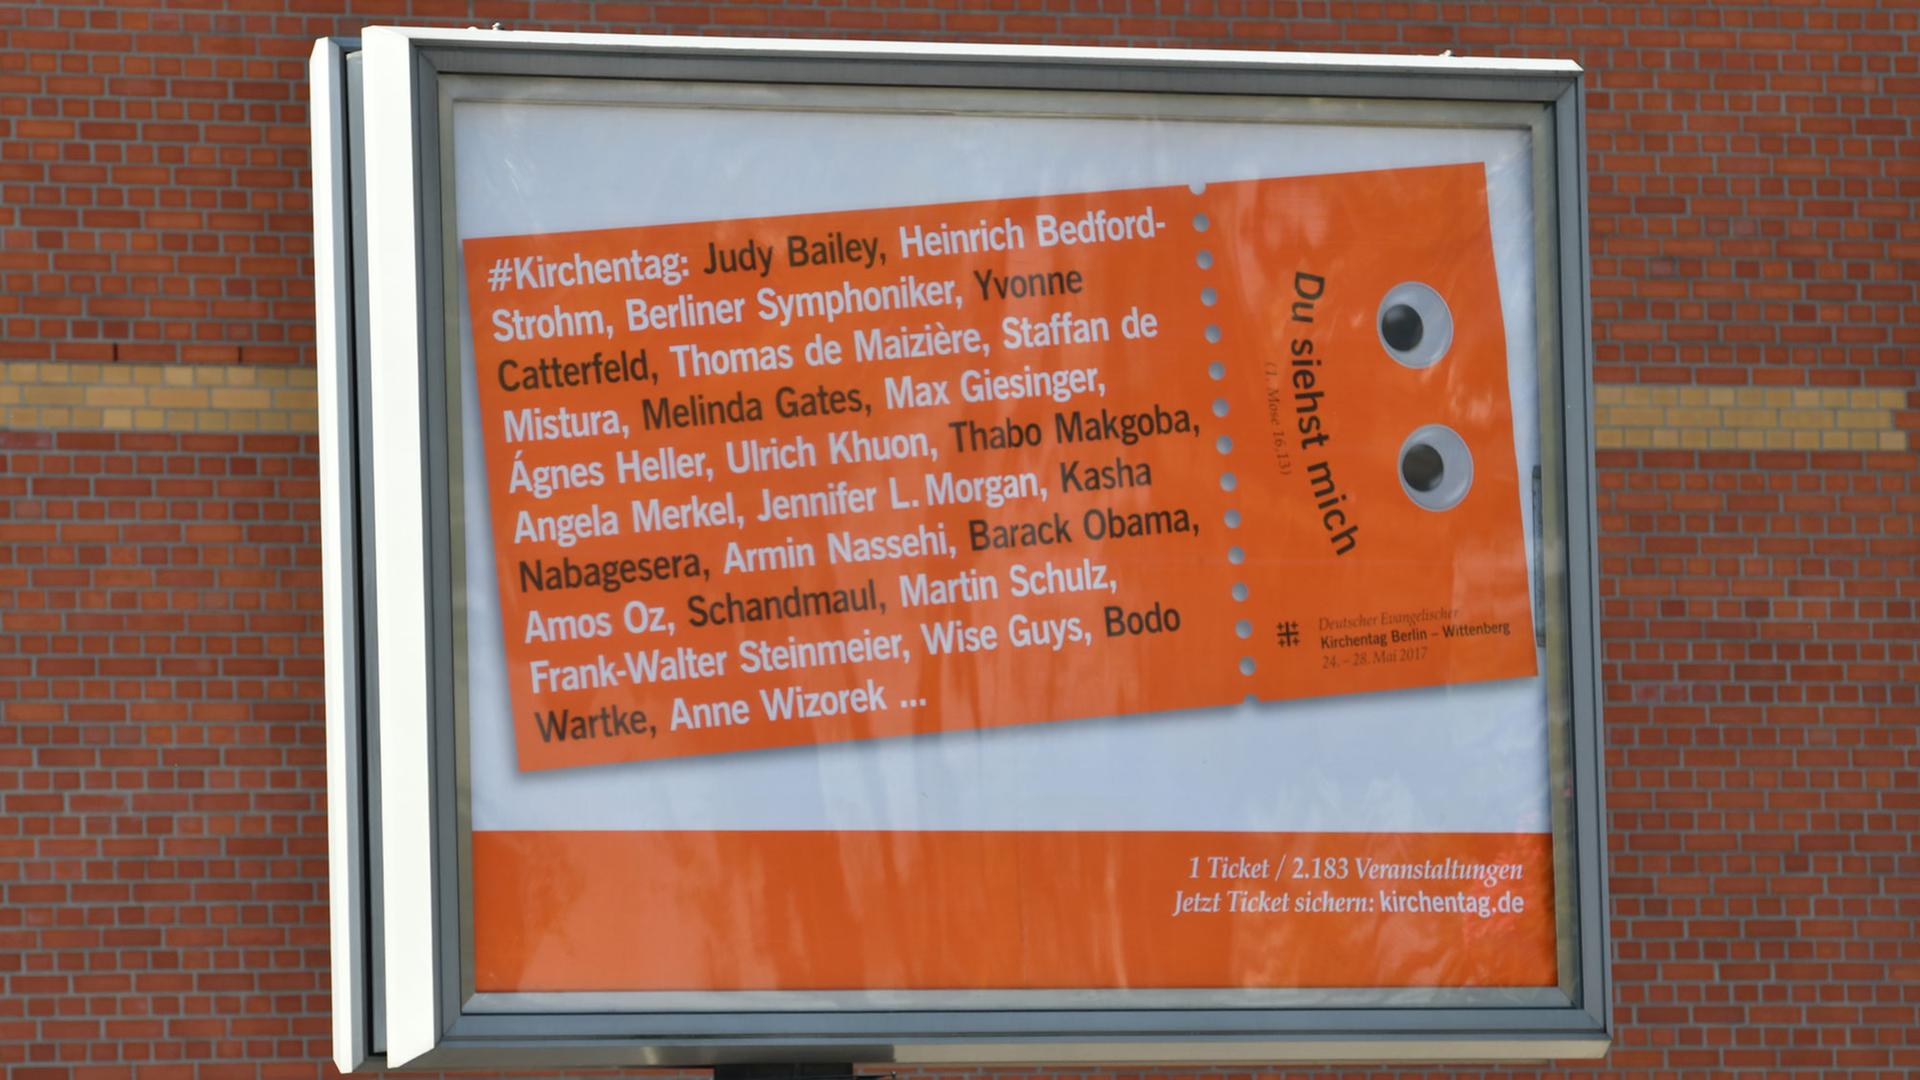 "Du siehst mich" steht auf einem Werbeplakat für den Evangelischen Kirchentag, aufgenommen am 21.05.2017 in Berlin. An zahlreichen Orten der Stadt sind die großflächigen Plakate mit den Kulleraugen zu sehen. Der 36. Evangelischen Kirchentag findet vom 24. bis 28. Mai statt.